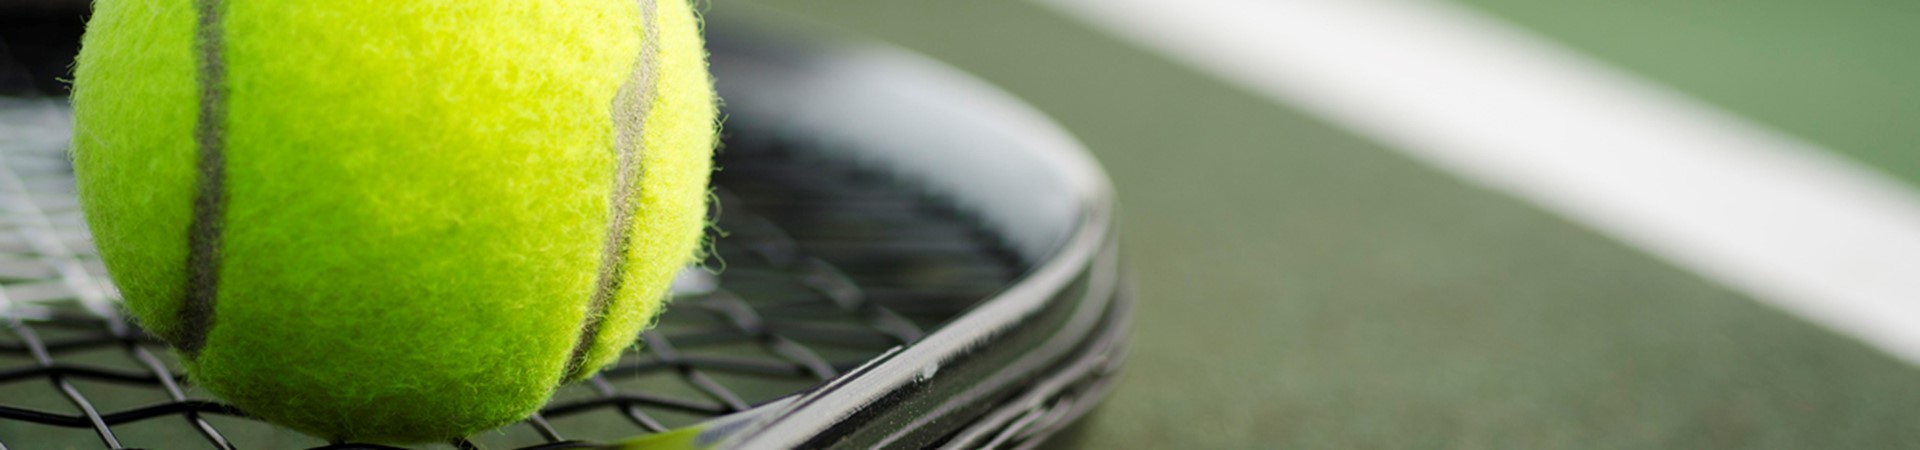 tennis ball balanced on a tennis racket in front of a tennis net